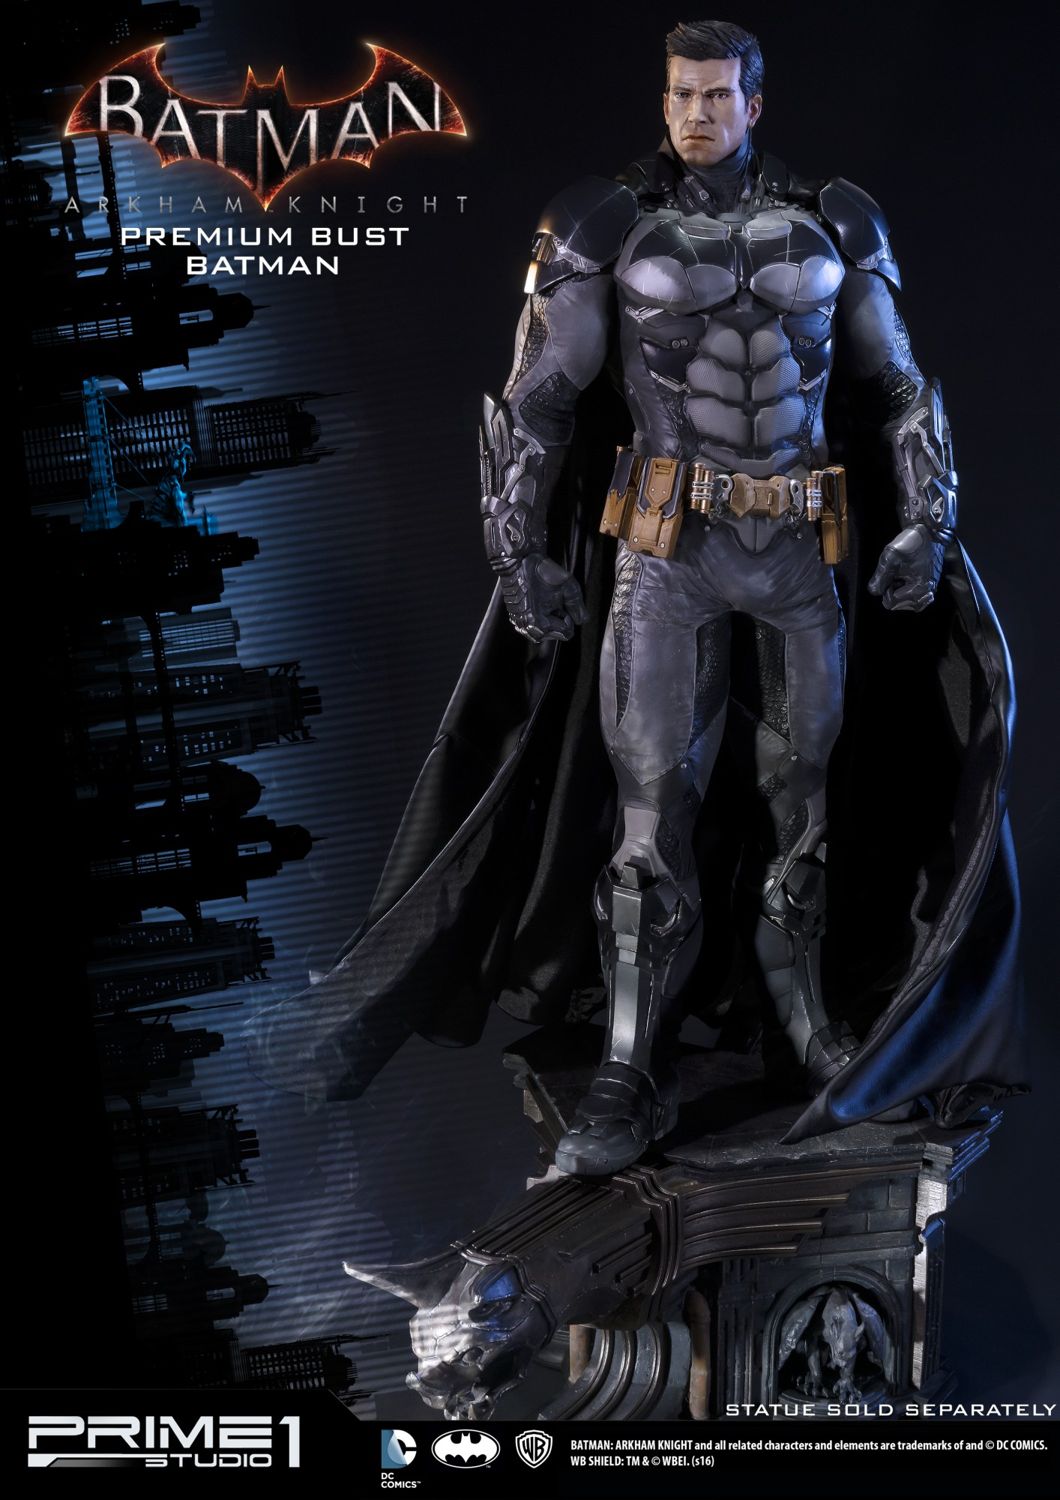 Comprar o Batman: Arkham Knight Edição Premium